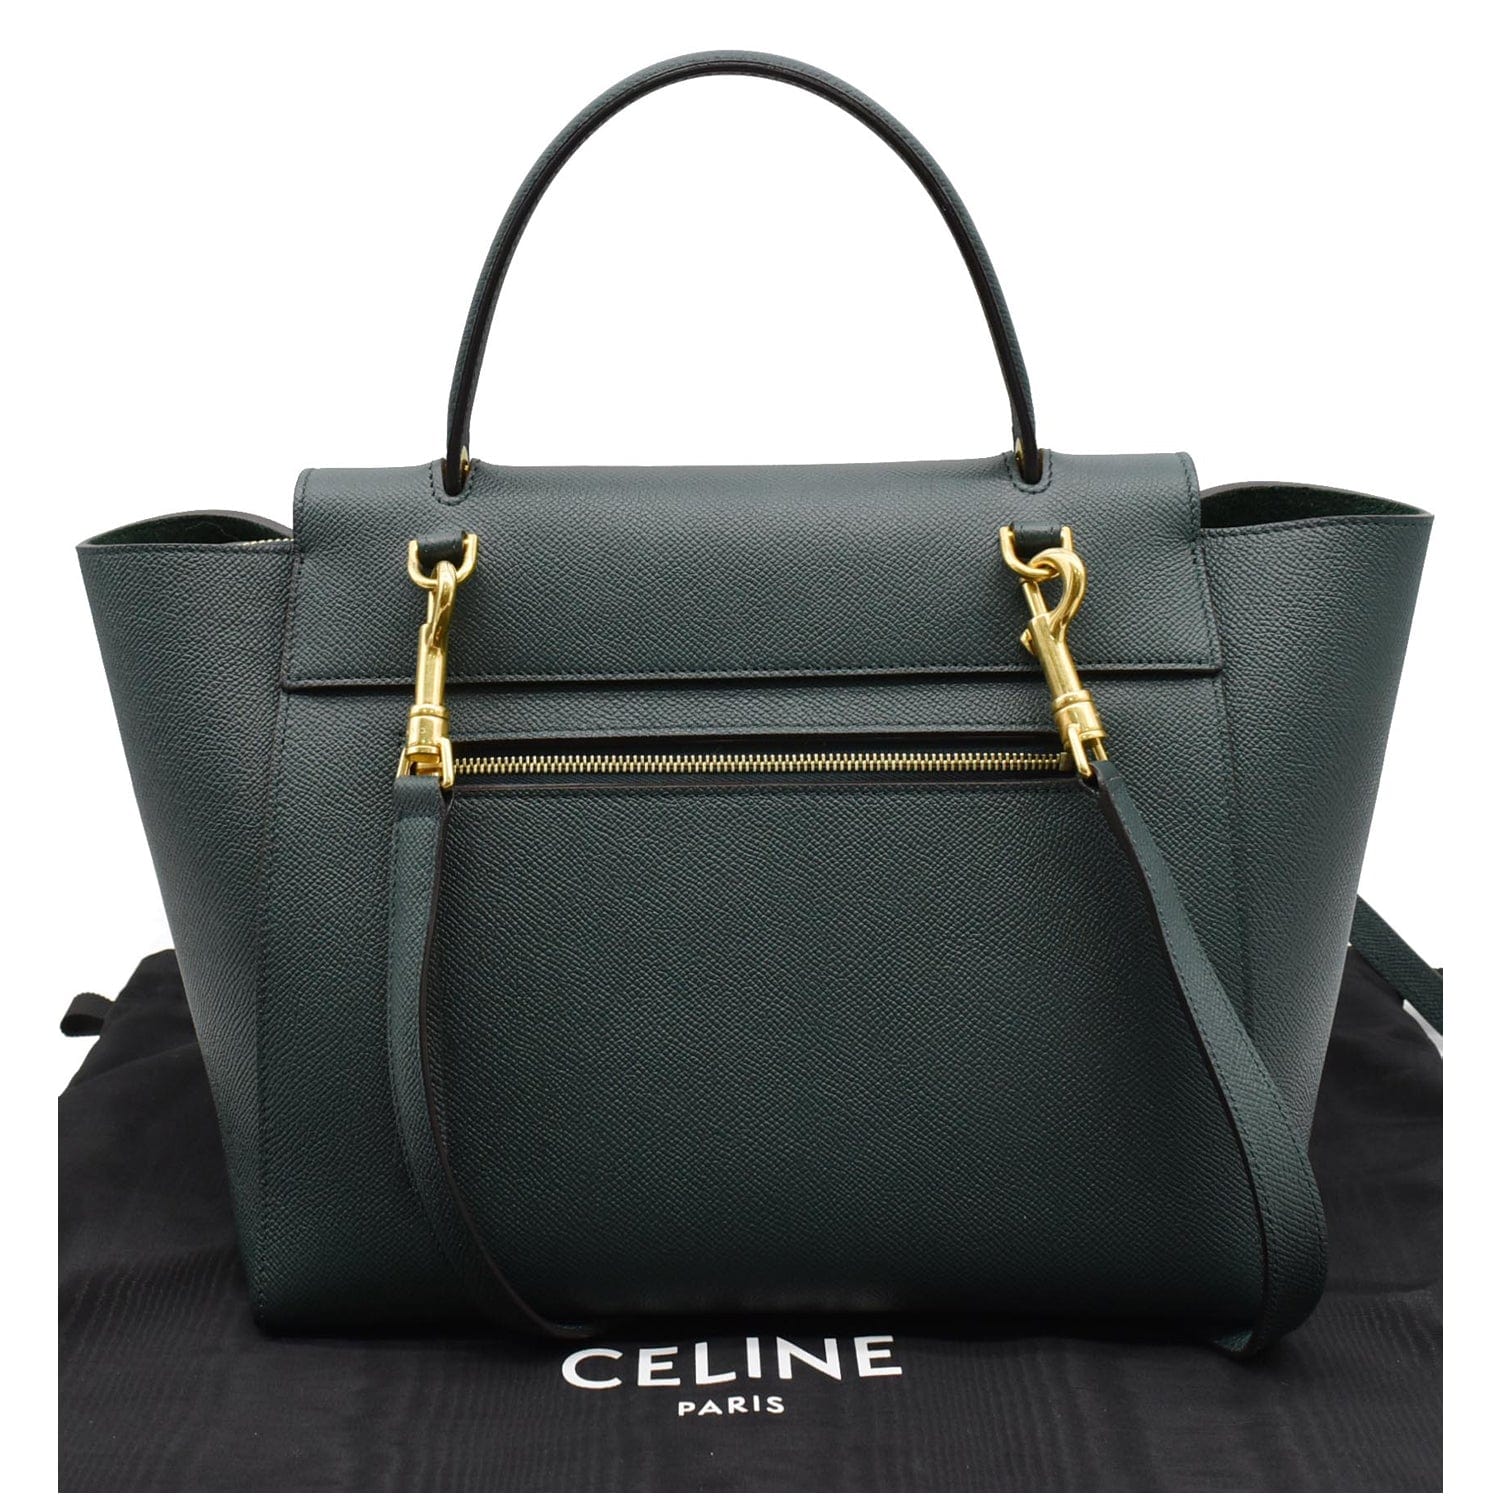 CELINE Belt bag MINI Black leather Women's Shoulder & Hand carry Authentic